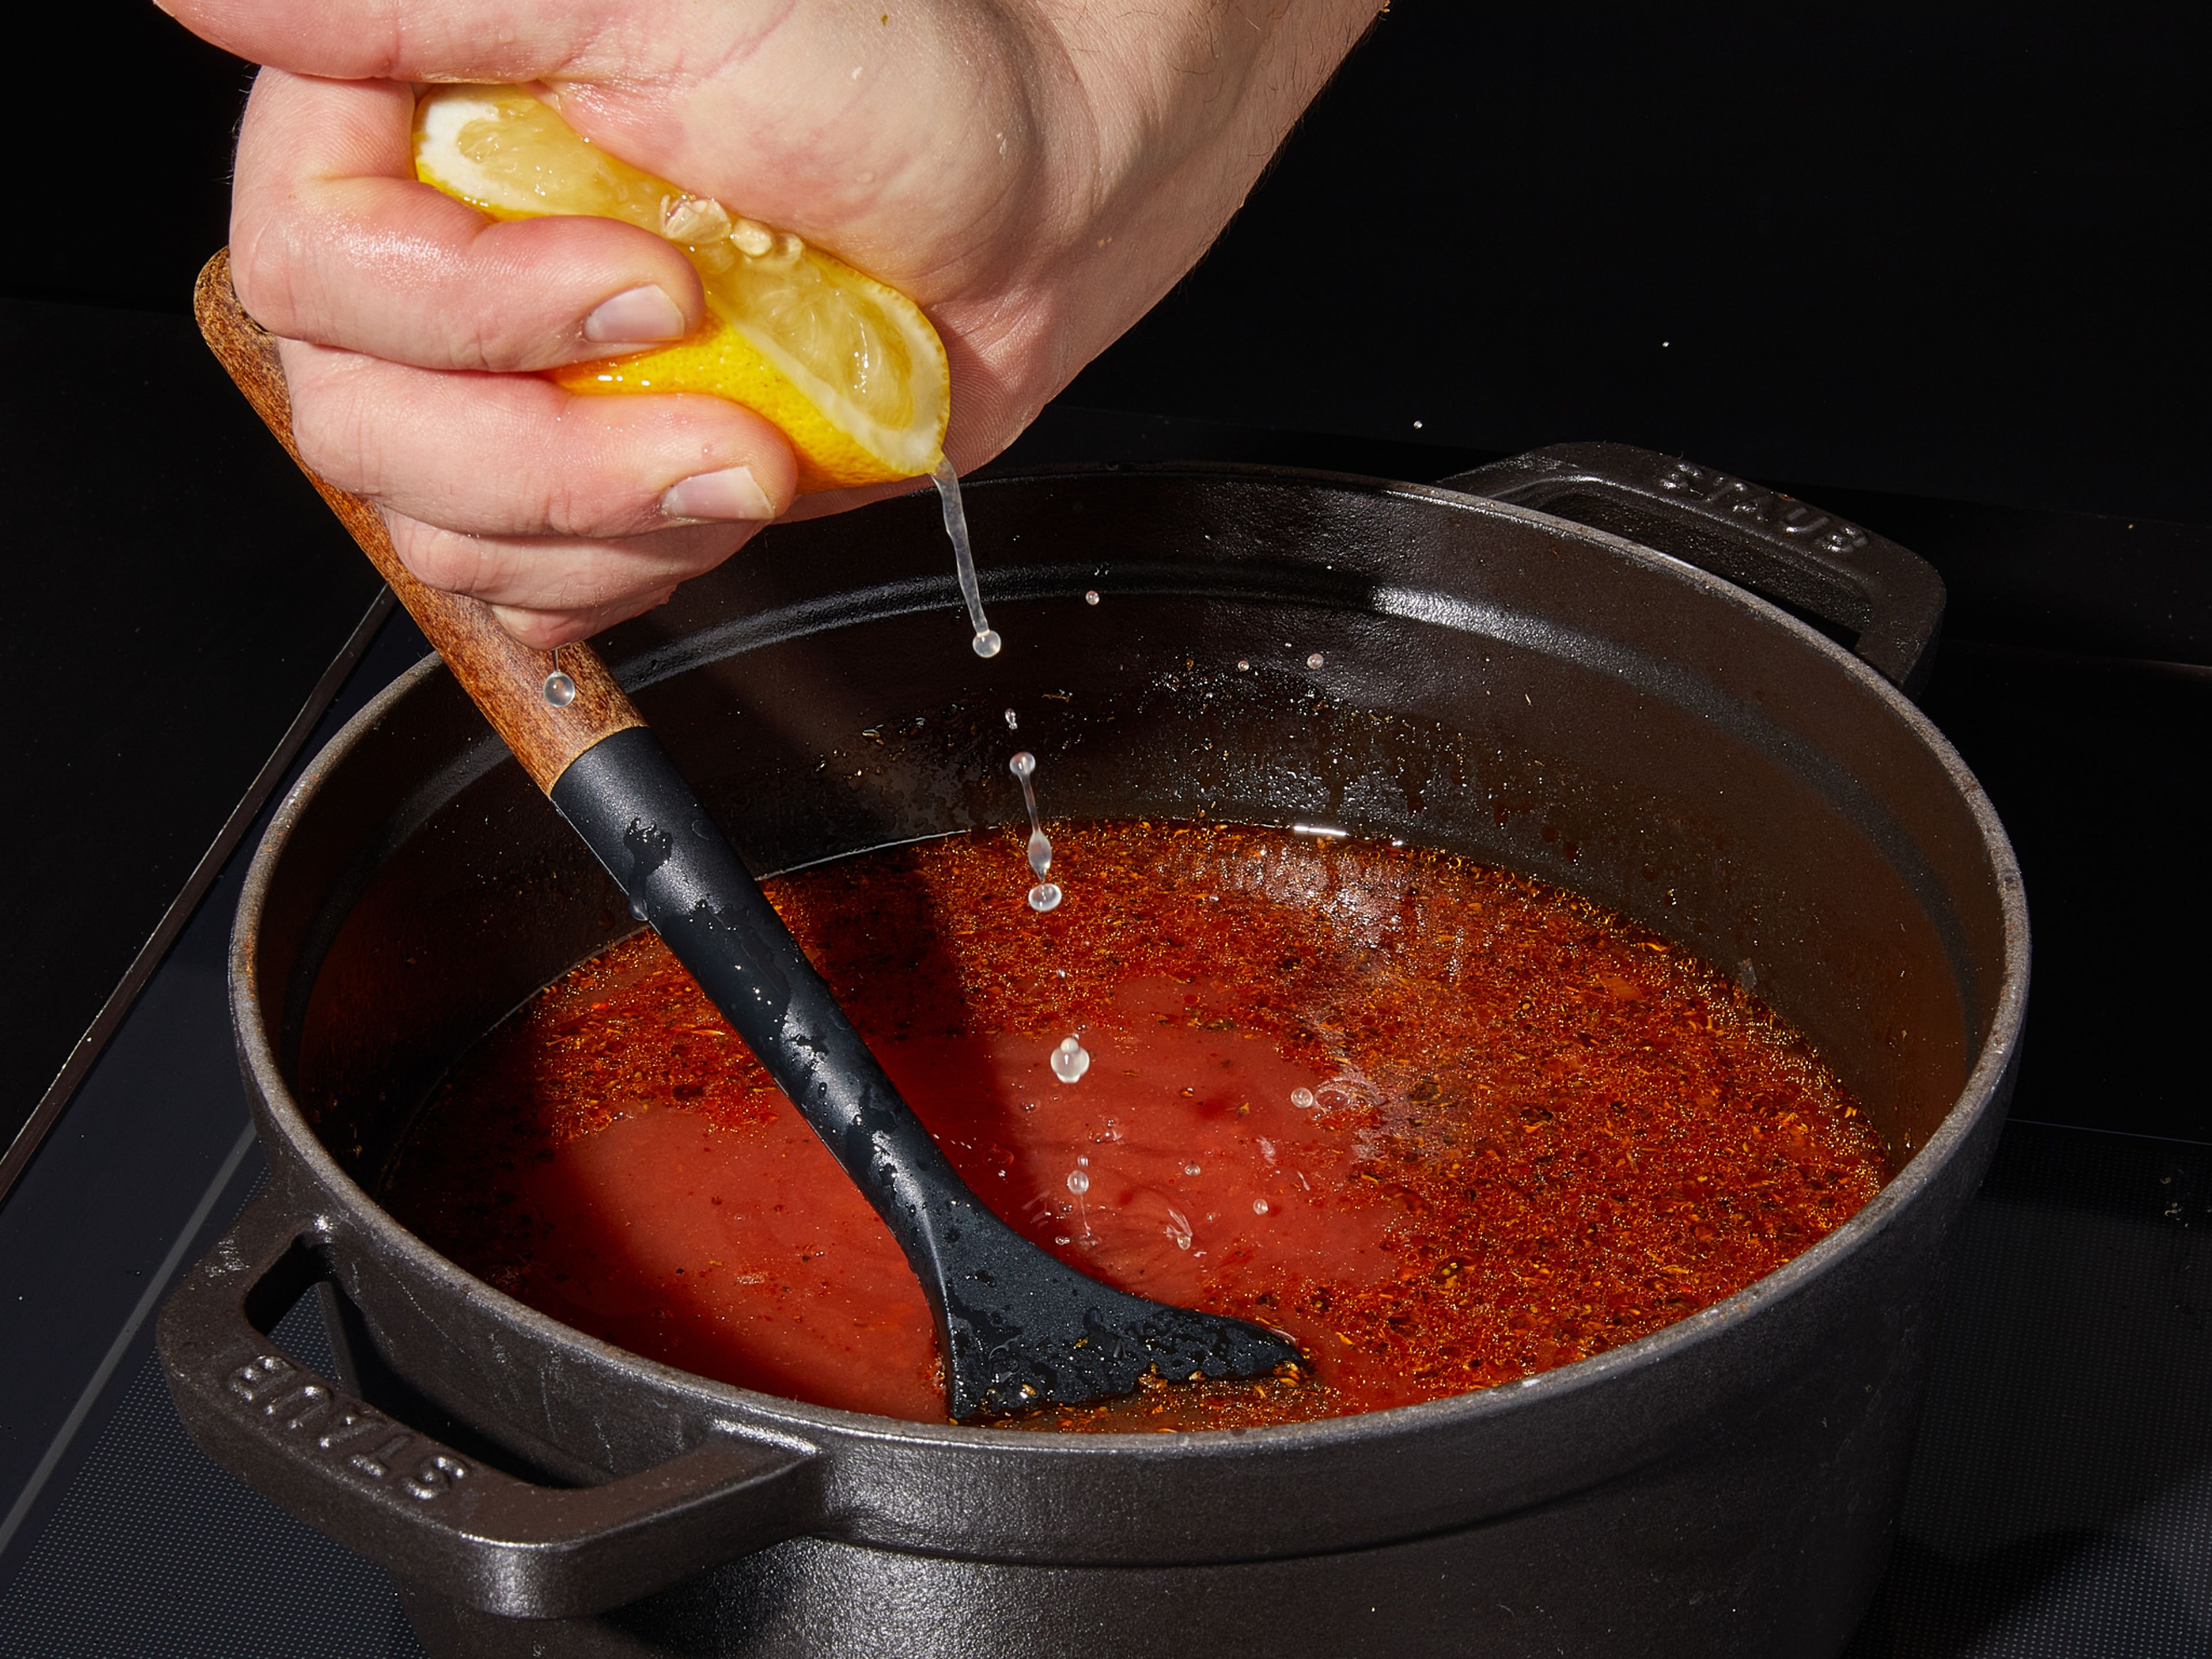 Tomaten aus der Dose, den Saft einer Zitrone und Gemüsebrühe hinzufügen. Mit Salz, Pfeffer und Zucker würzen. Dann die Suppe ca. 10 Min. köcheln lassen.